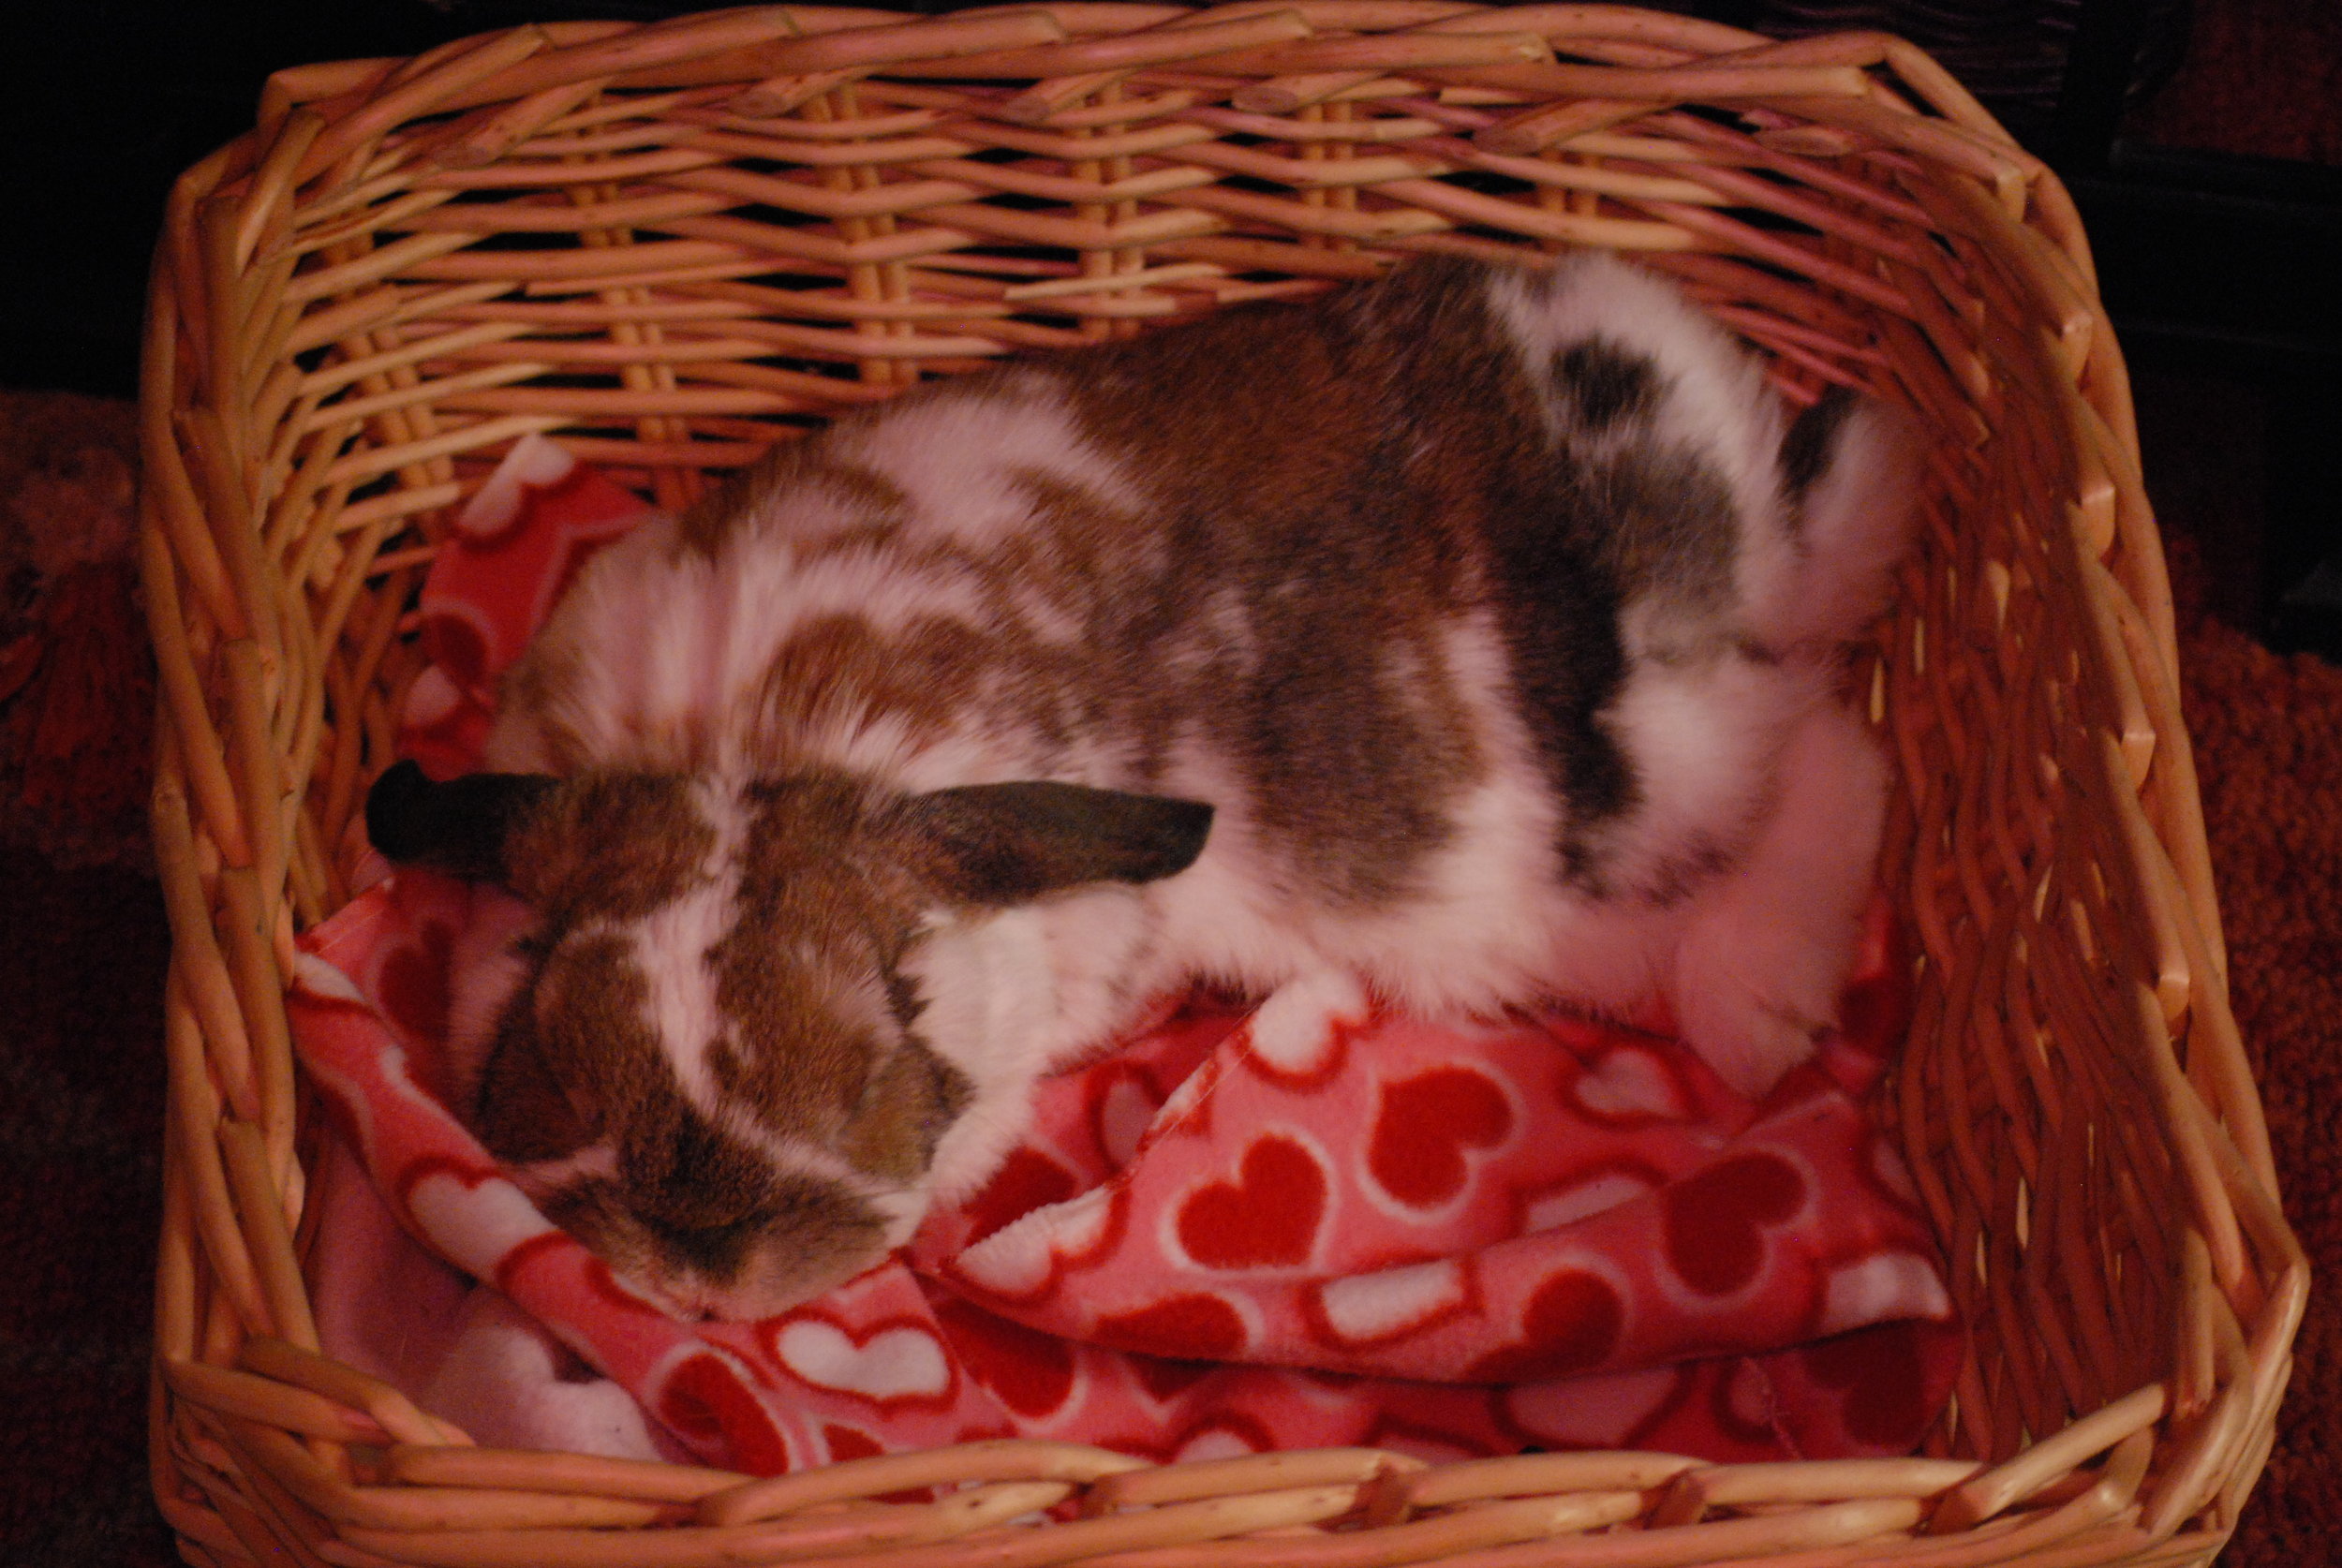 Bunny Sleeps in Her Cozy Basket